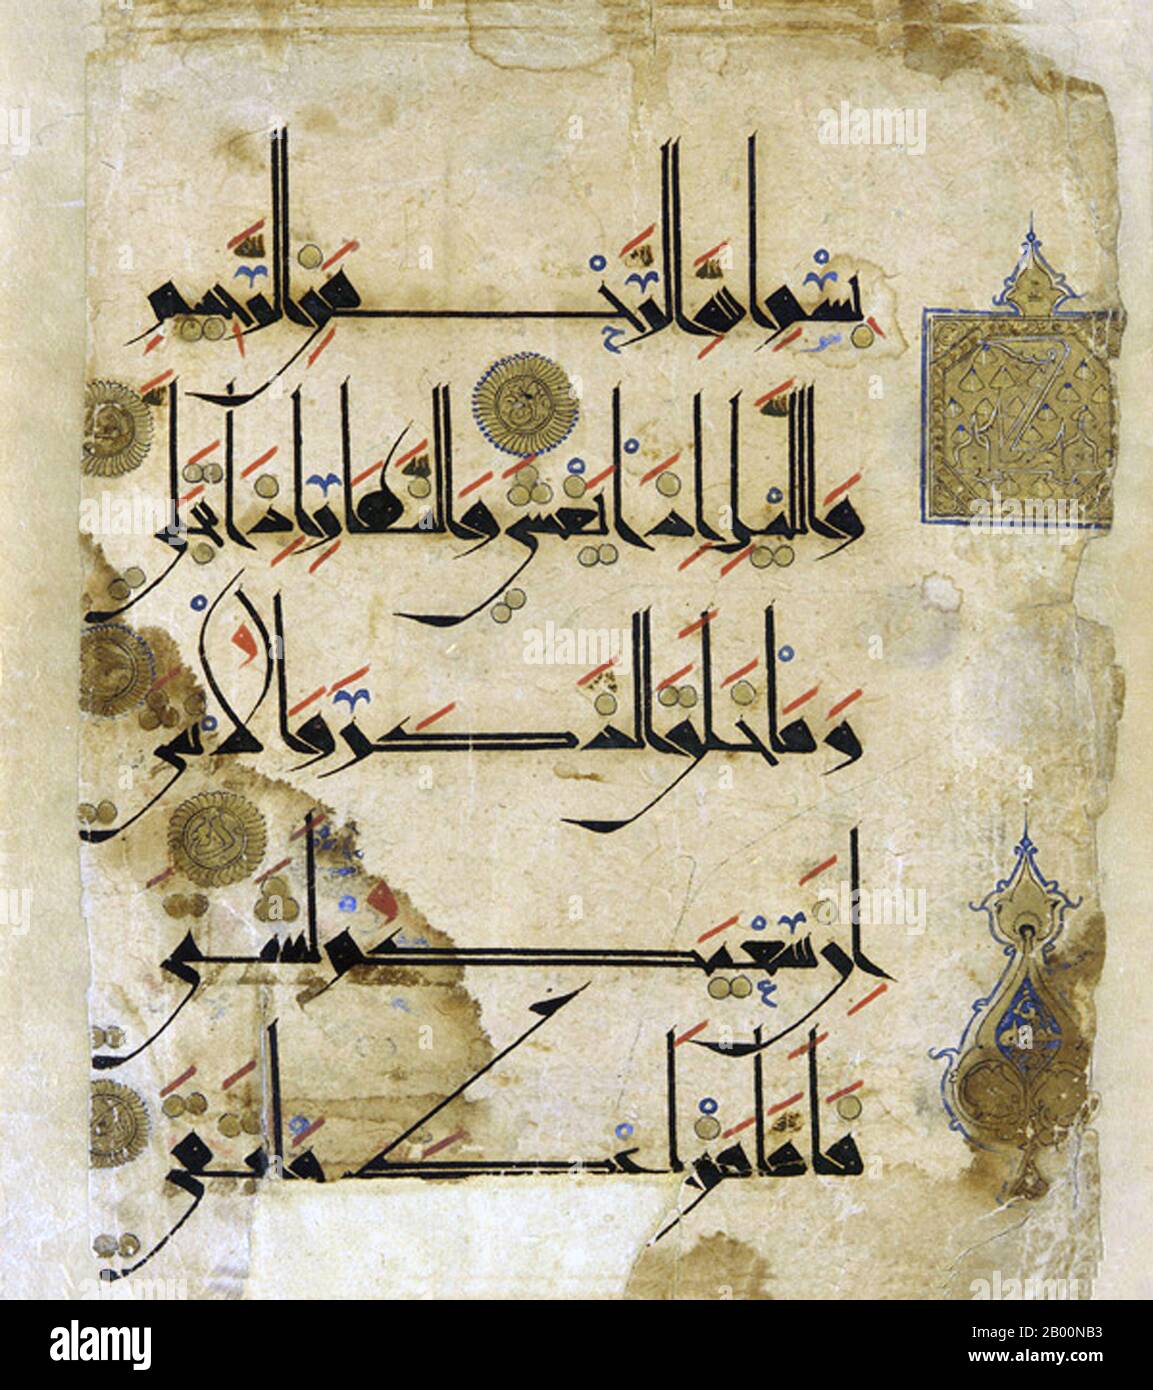 Moyen-Orient: Arabe . Folio Qur'anic, script Kufic, XIe siècle. Kufic est la forme calligraphique la plus ancienne des différents scripts arabes et consiste en une forme modifiée de l'ancien script nabatéen. Son nom est dérivé de la ville de Kufa, en Irak, bien qu'il ait été connu en Mésopotamie au moins 100 ans avant la fondation de Kufa. Au moment de l'émergence de l'Islam, ce type de script était déjà utilisé dans diverses parties de la péninsule arabe. C'est dans ce script que les premières copies du Coran ont été écrites. Kufic est une forme de script composée de lignes droites et d'angles. Banque D'Images